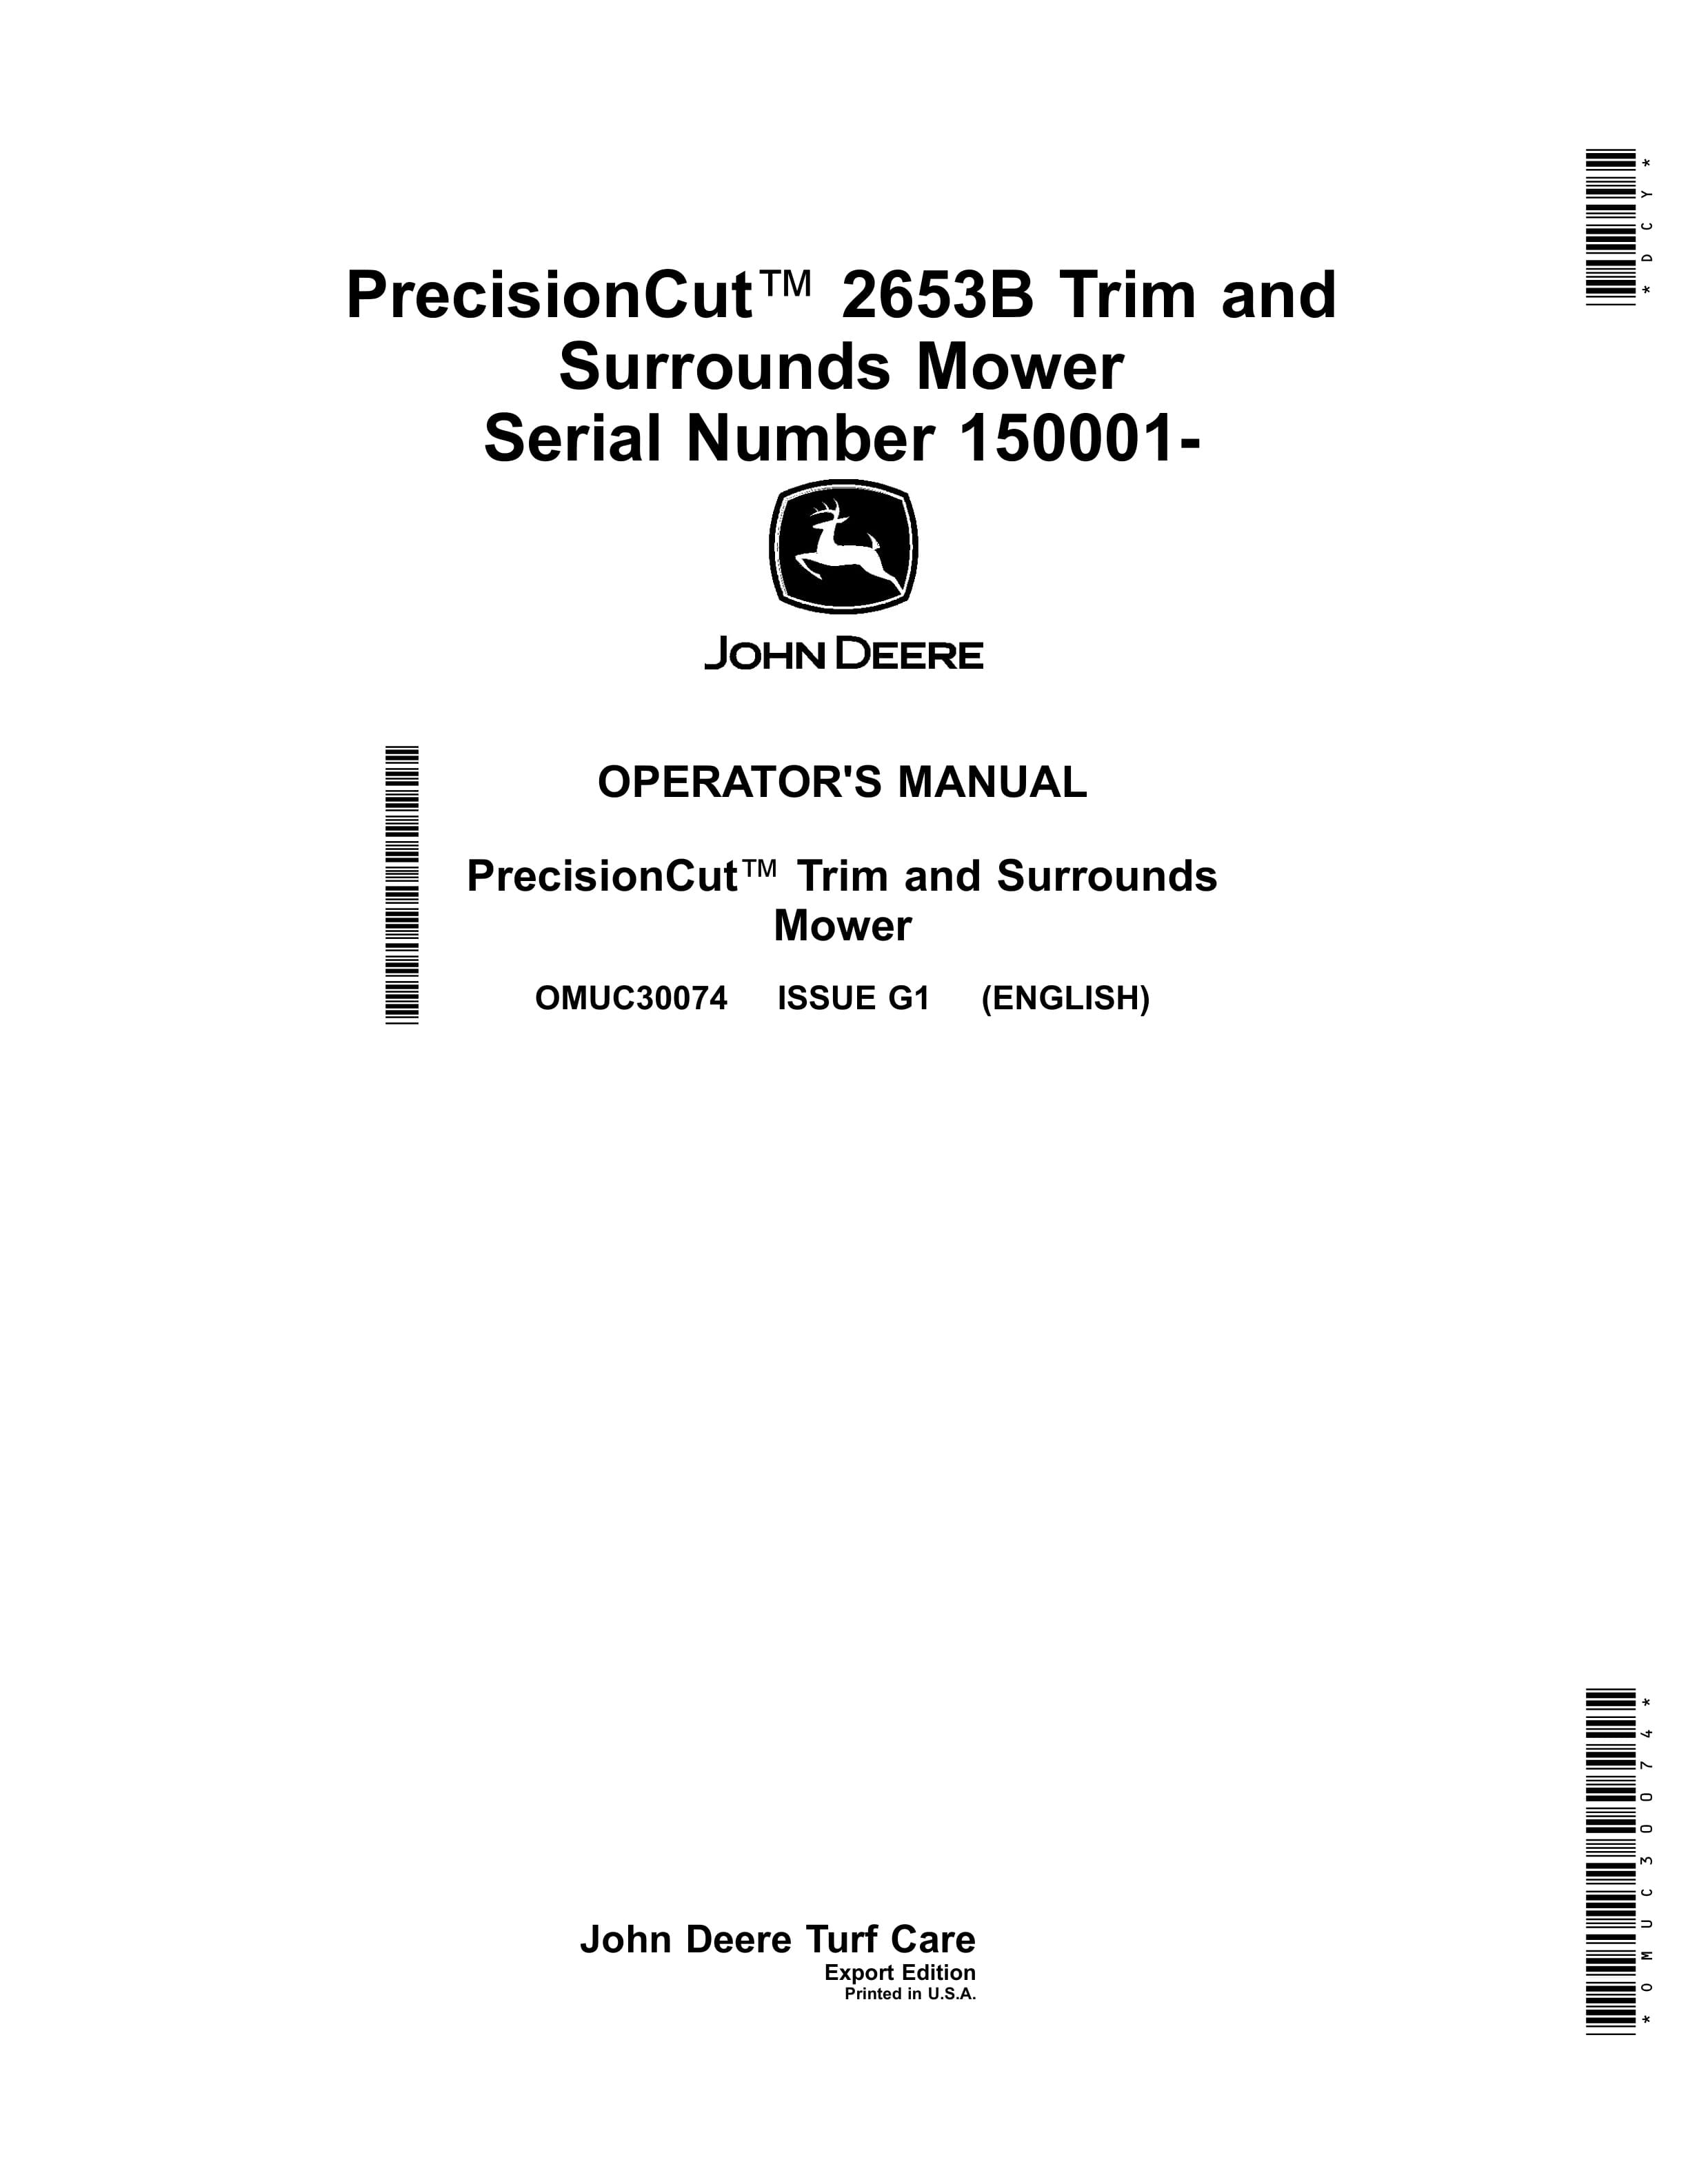 John Deere PrecisionCut 2653B Trim and Surrounds Mower Operator Manual OMUC30074 1